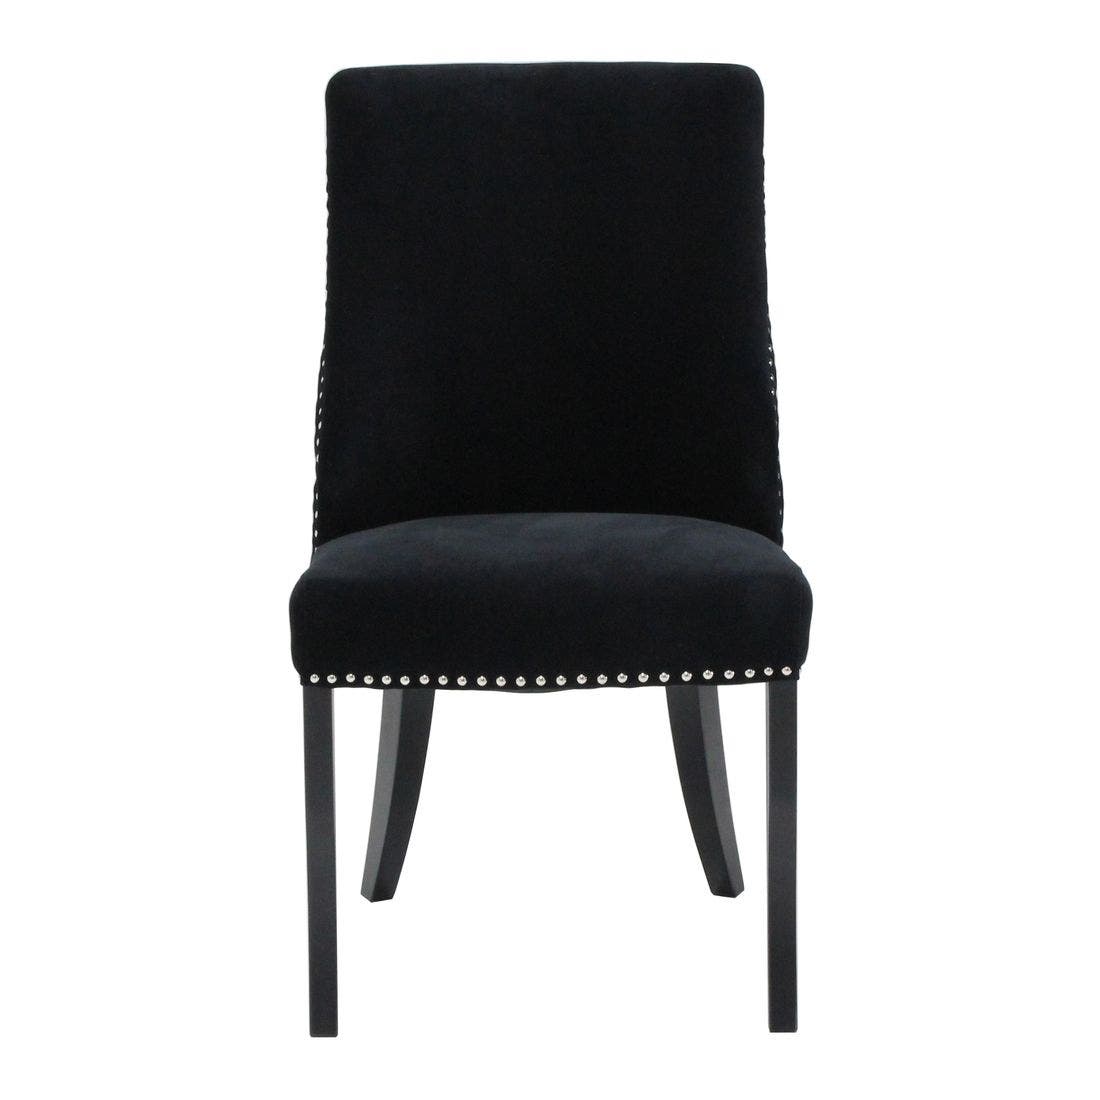 เก้าอี้ทานอาหาร เก้าอี้ไม้เบาะผ้า รุ่น Blitz สีสีดำ-SB Design Square